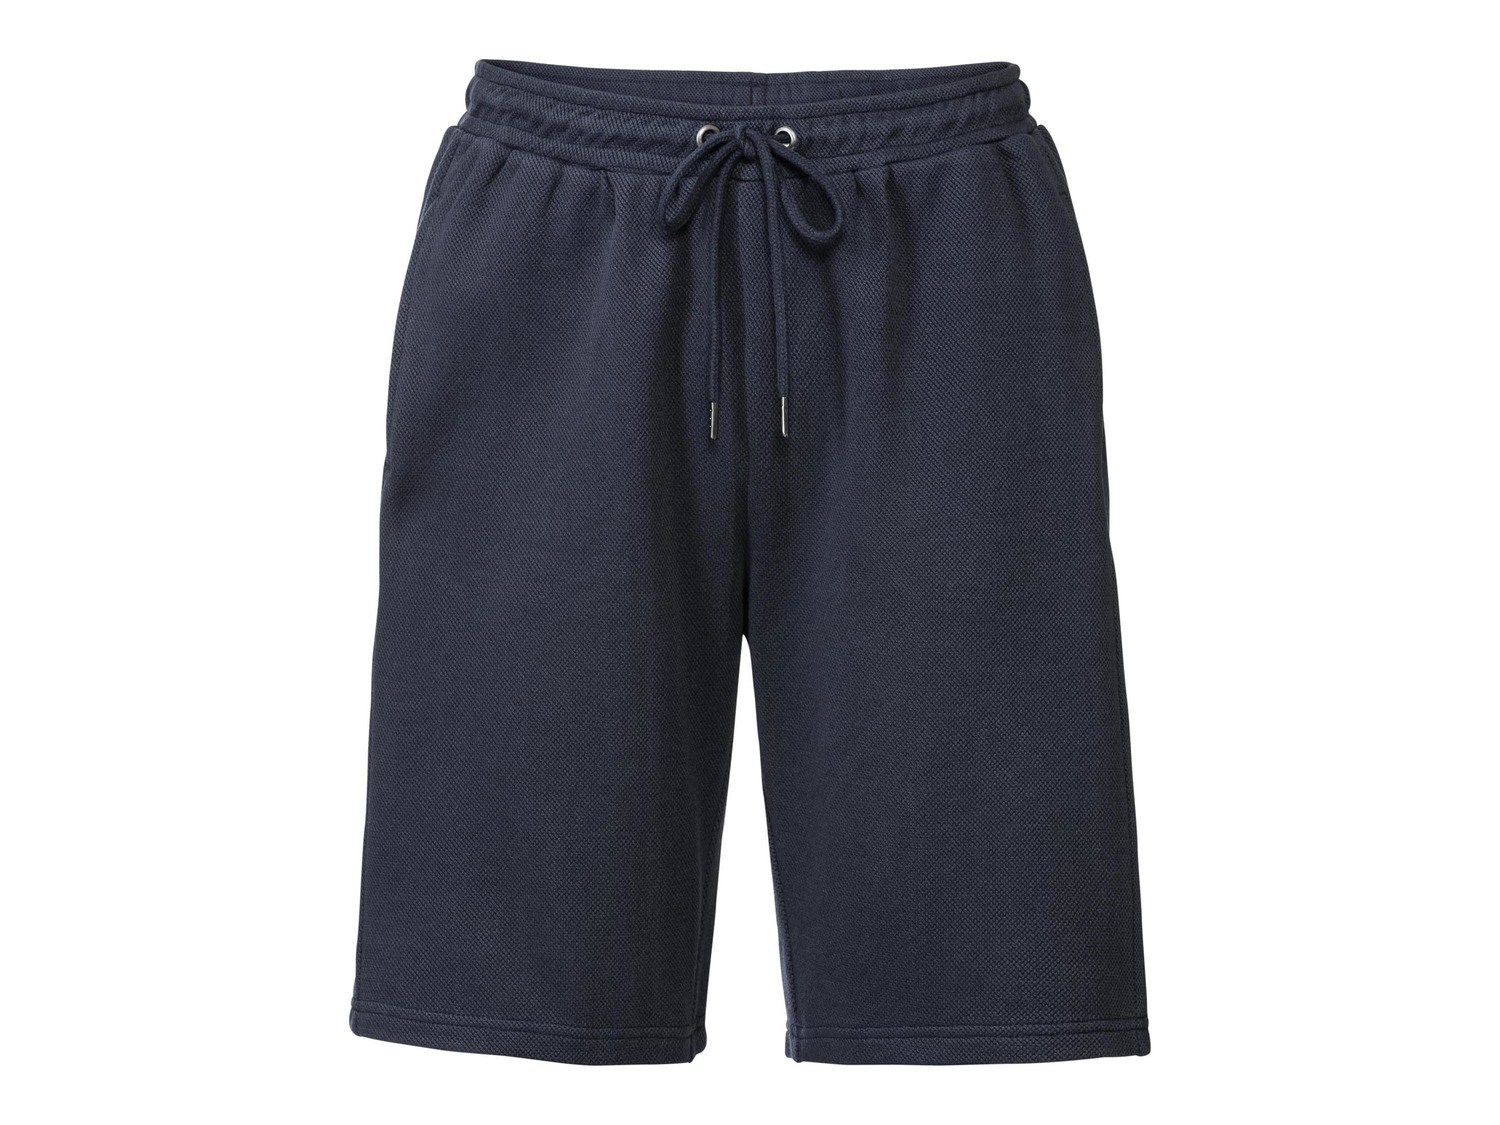 Shorts da uomo Livergy, prezzo 5.99 &#8364;  
Misure: S-XL
- Oeko tex NEW